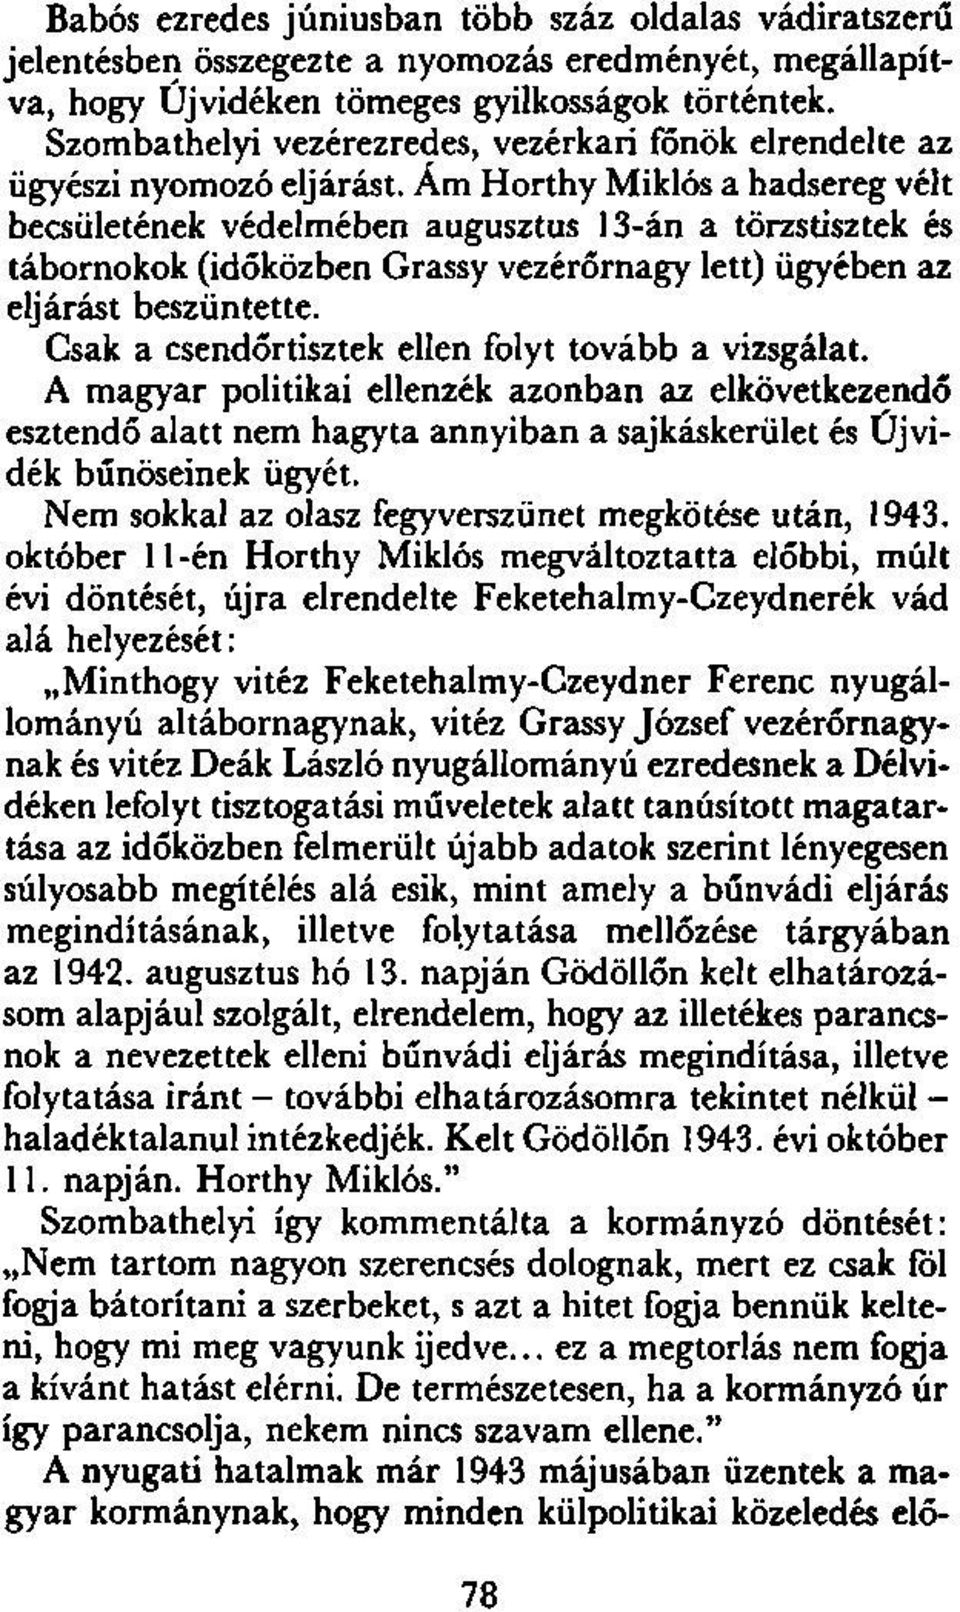 Ám Horthy Miklós a hadsereg vélt becsületének védelmében augusztus 13-án a törzstisztek és tábornokok (időközben Grassy vezérőrnagy lett) ügyében az eljárást beszüntette.